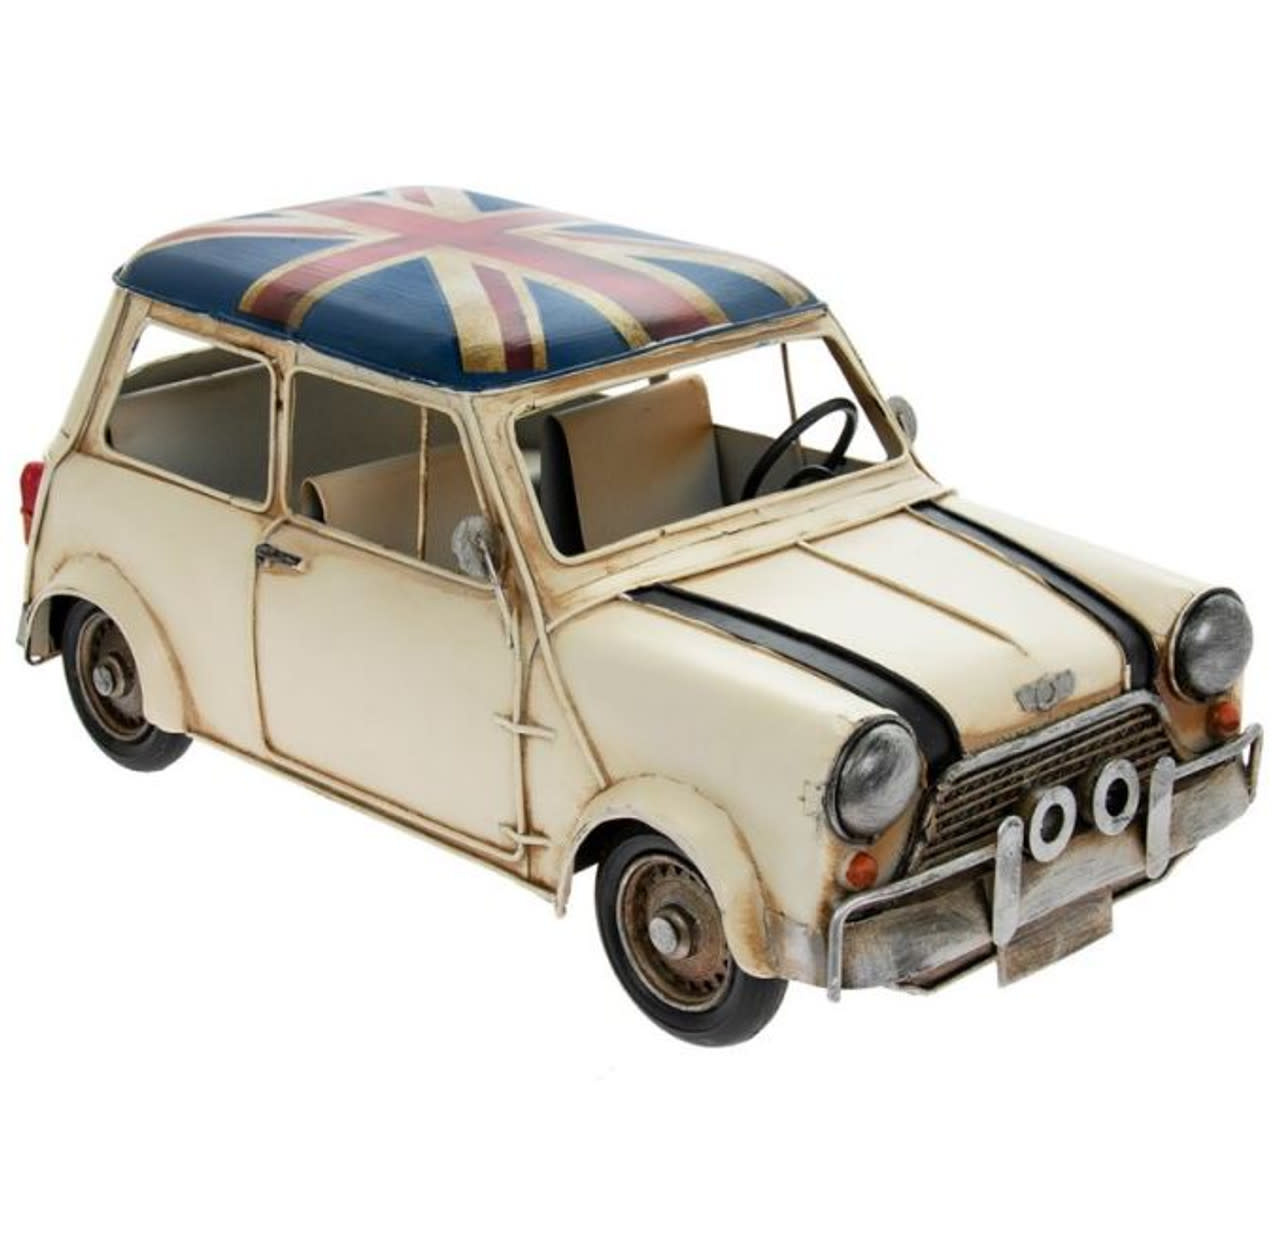 Vintage Transport Cream Mini Cooper Model - British Isles